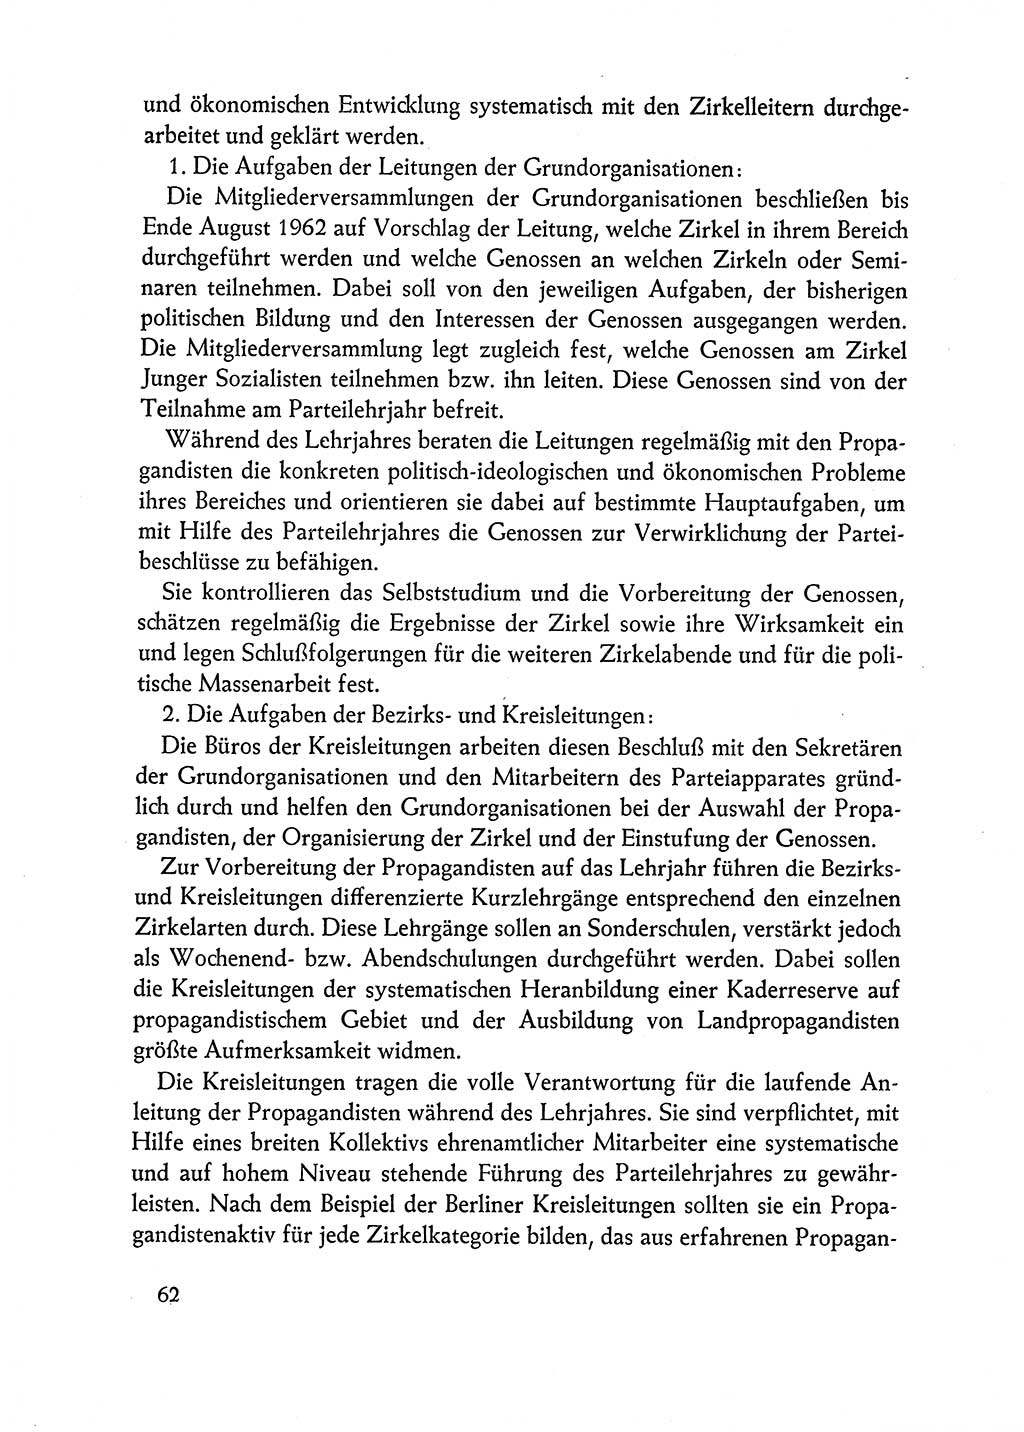 Dokumente der Sozialistischen Einheitspartei Deutschlands (SED) [Deutsche Demokratische Republik (DDR)] 1962-1963, Seite 62 (Dok. SED DDR 1962-1963, S. 62)